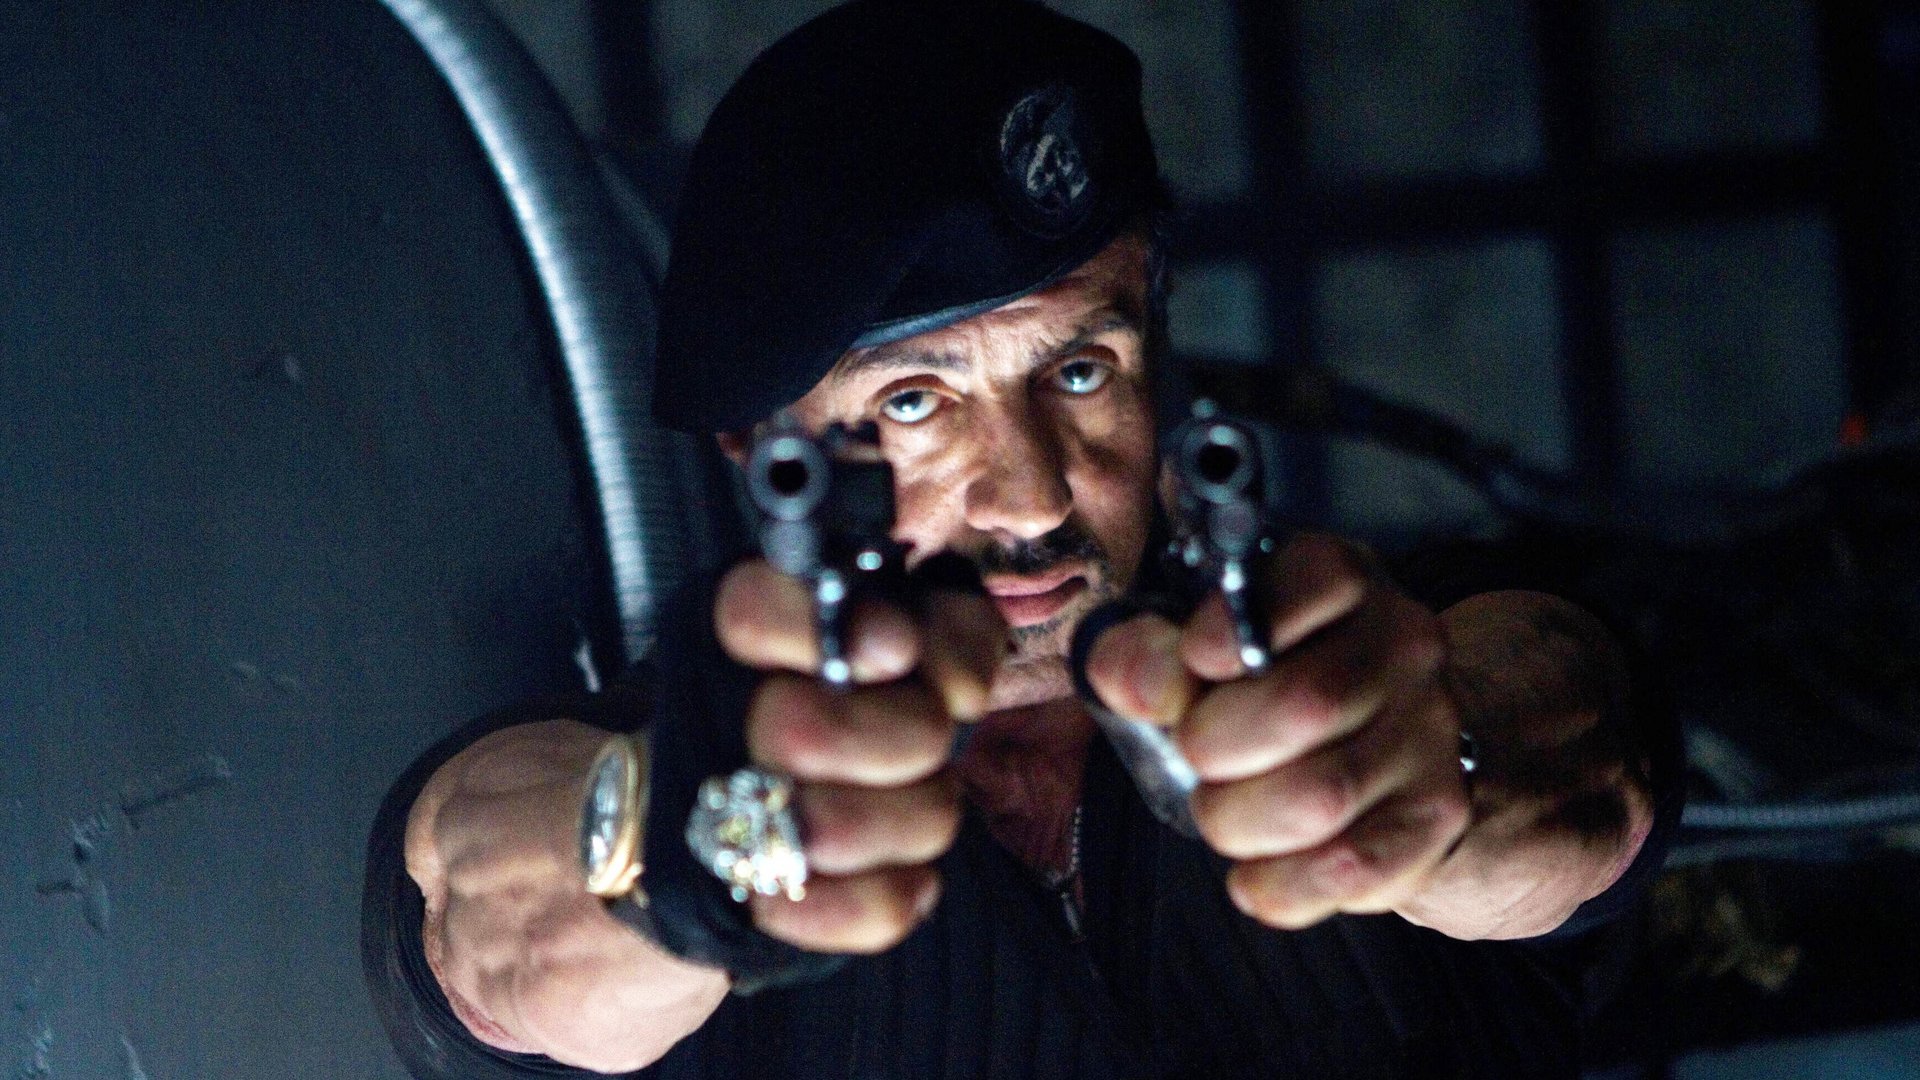 #Schock für Sylvester Stallone am „Expendables“-Set: Beinahe-Unfall mit Knarre beim Actiondreh